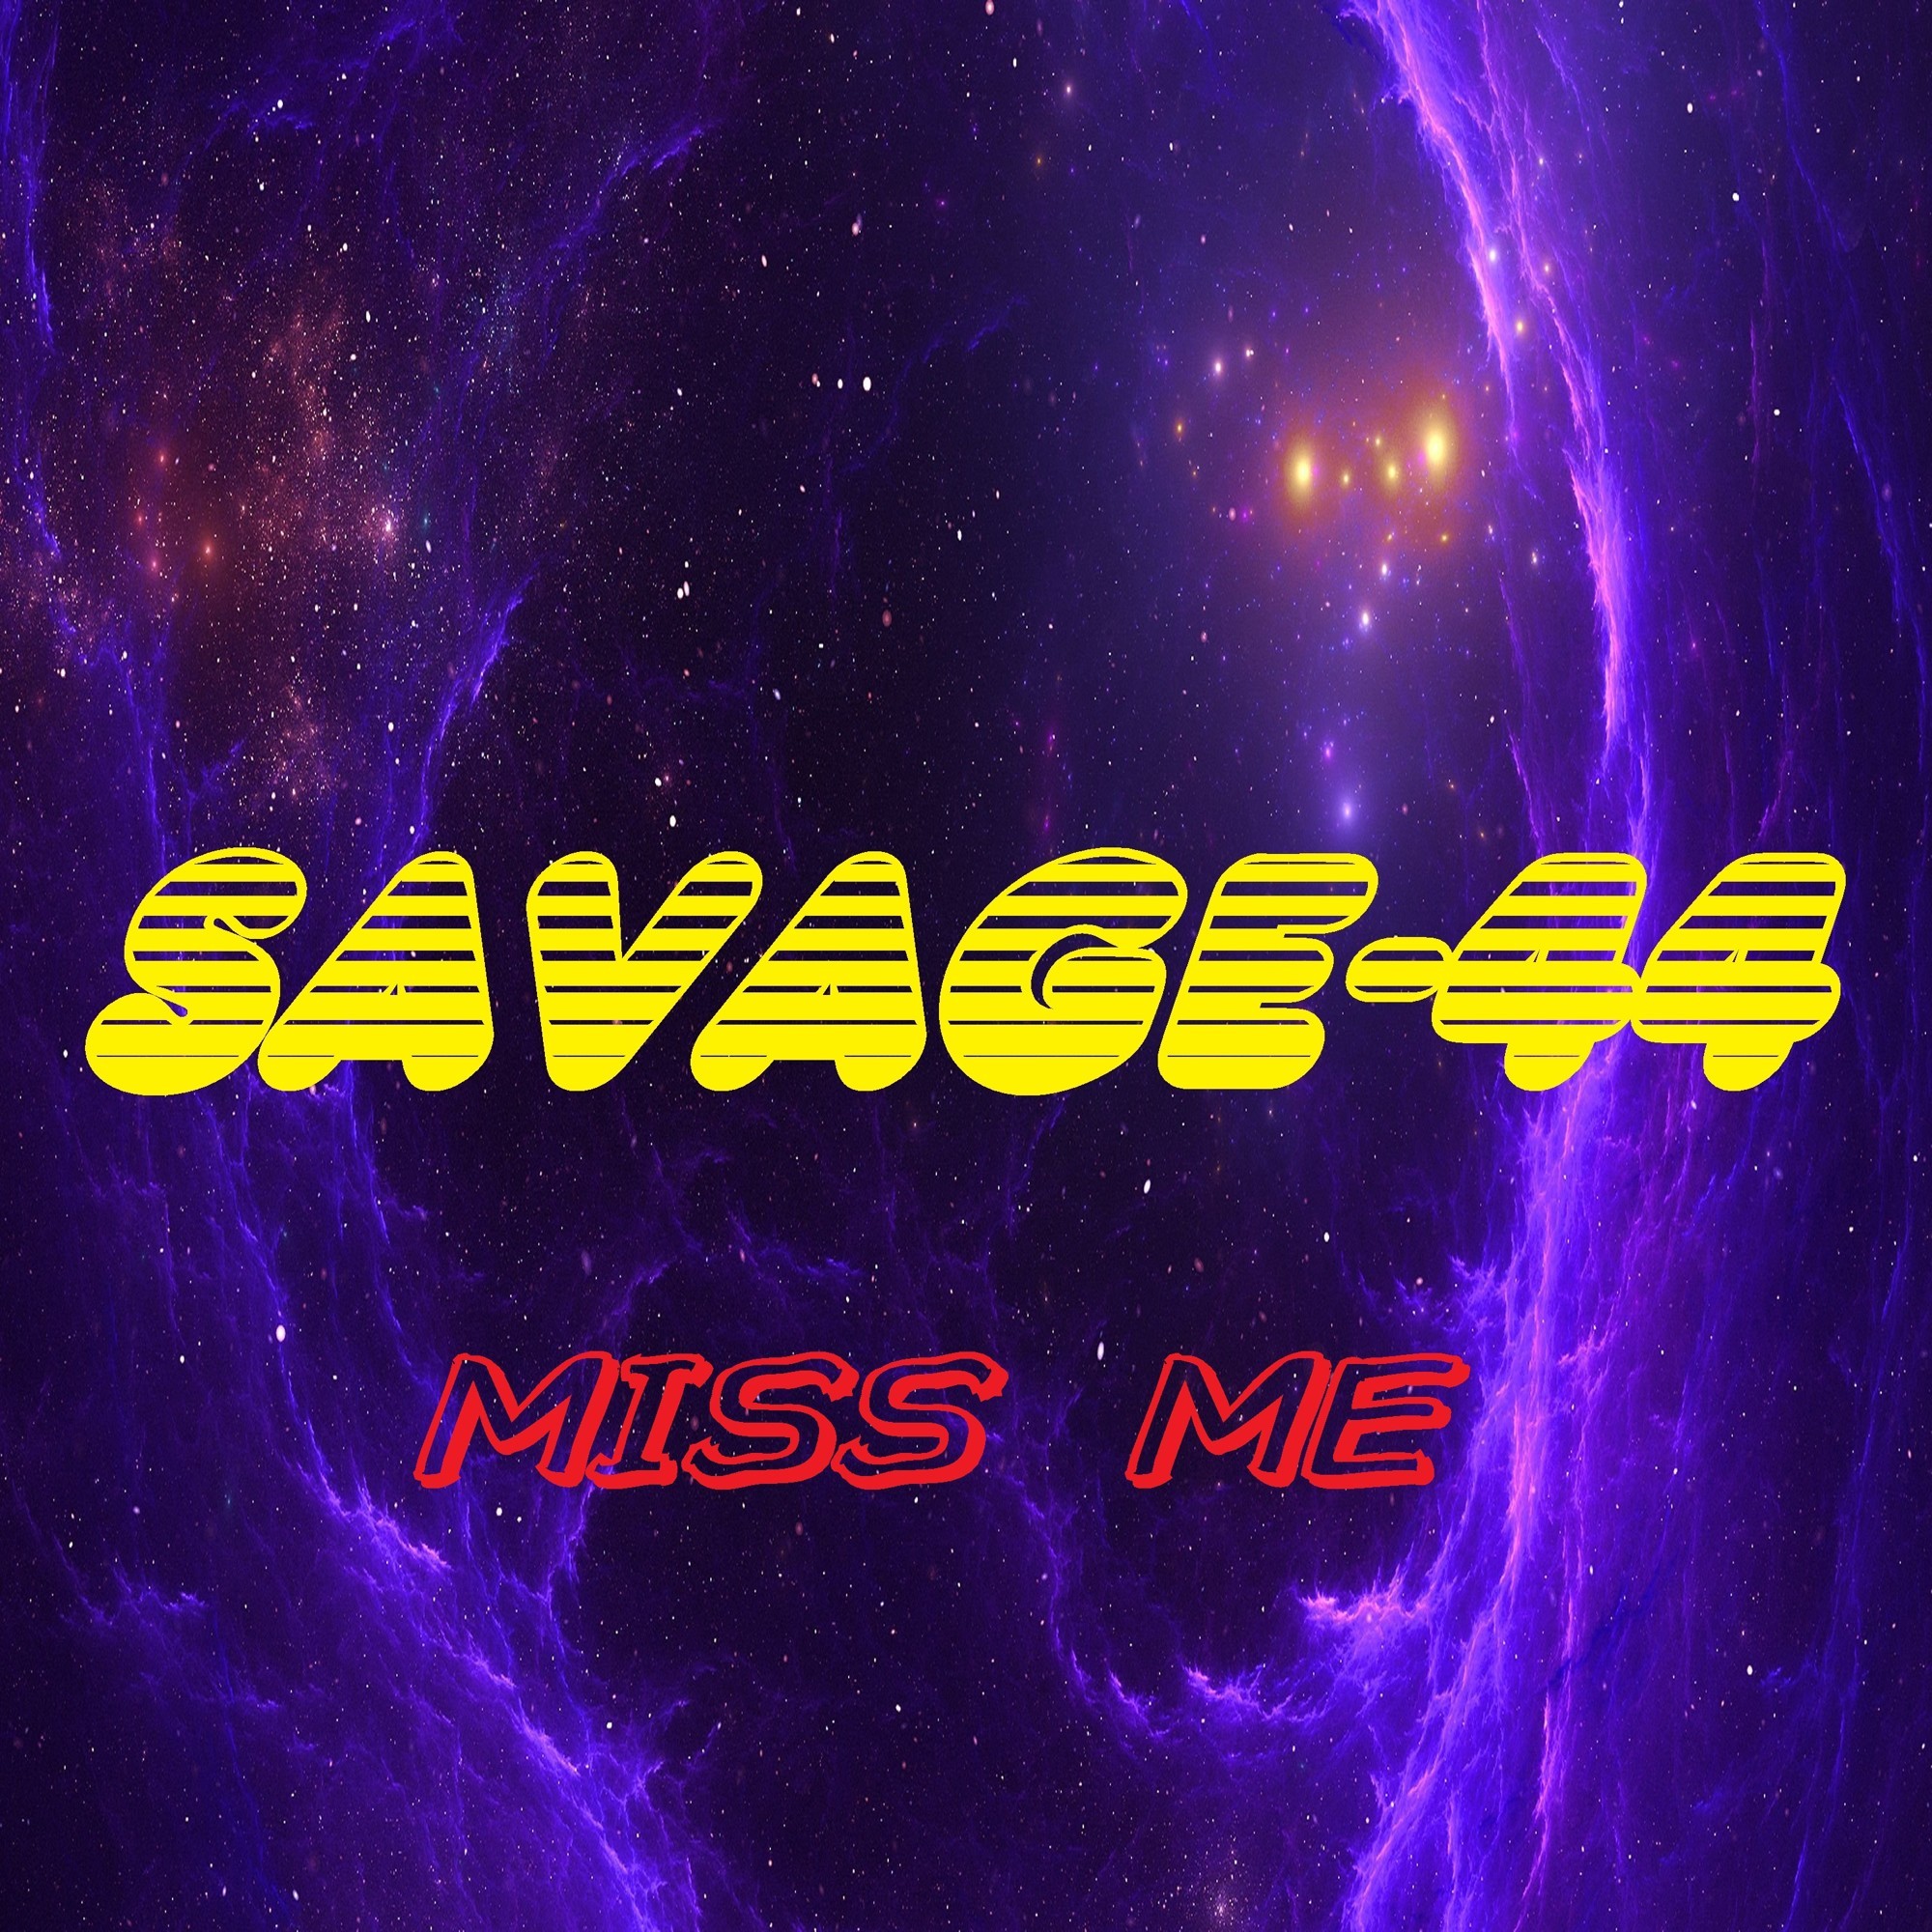 Savage 44 the music ring new. Savage 44. DJ Savage 44. Savage-44 слушать. Альбом Miss.